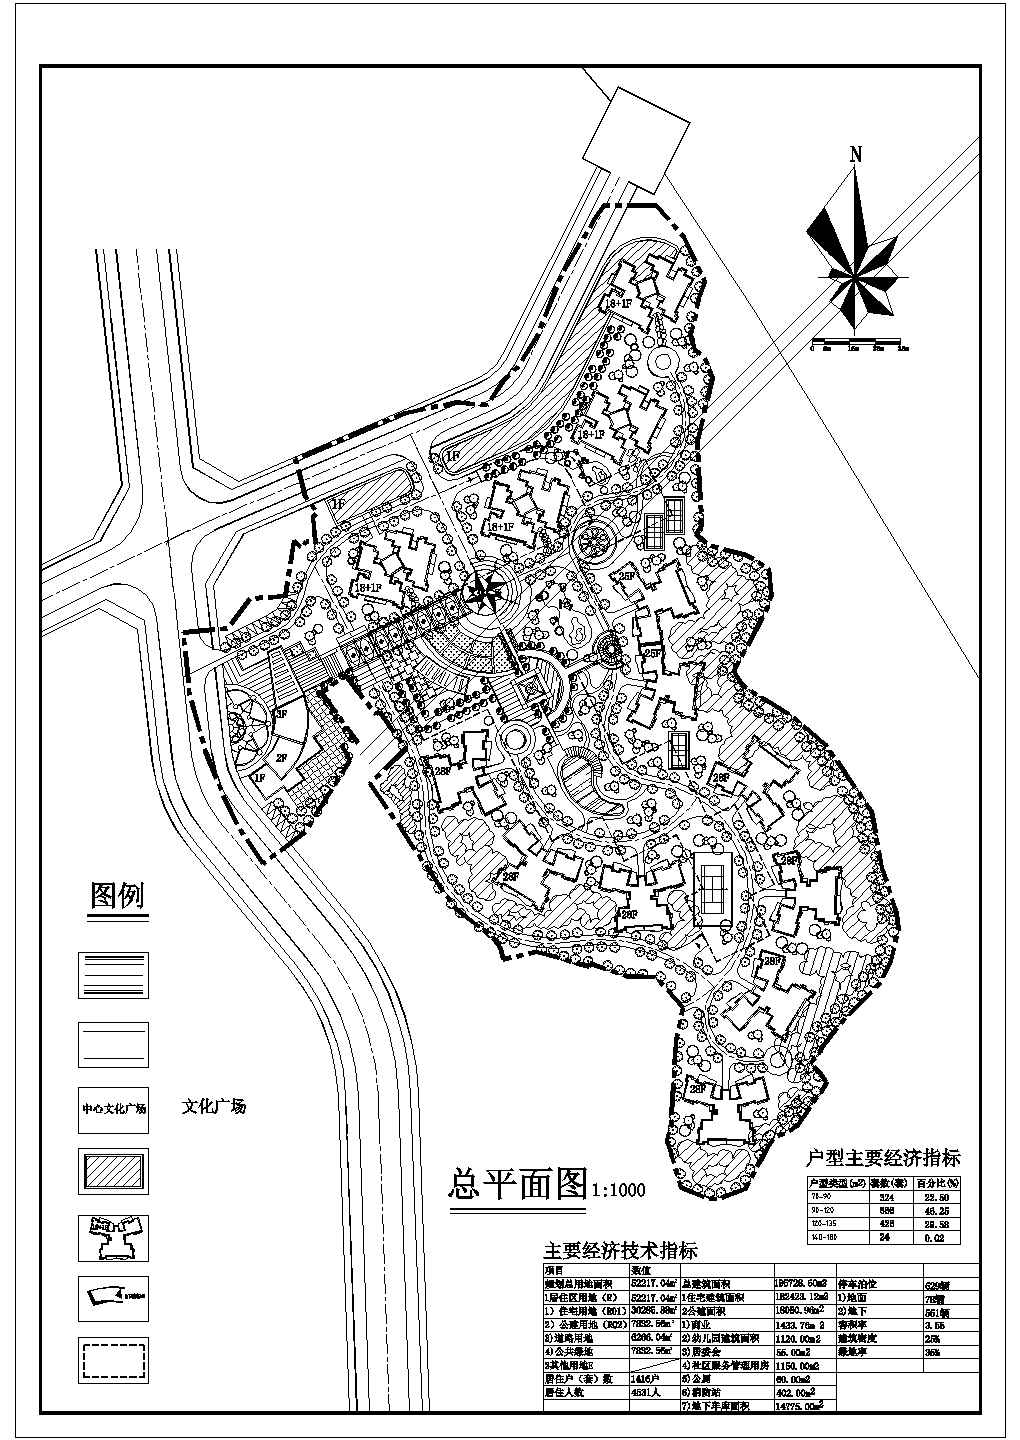 规划总用地5万2平米居住户数1416户小区规划方案